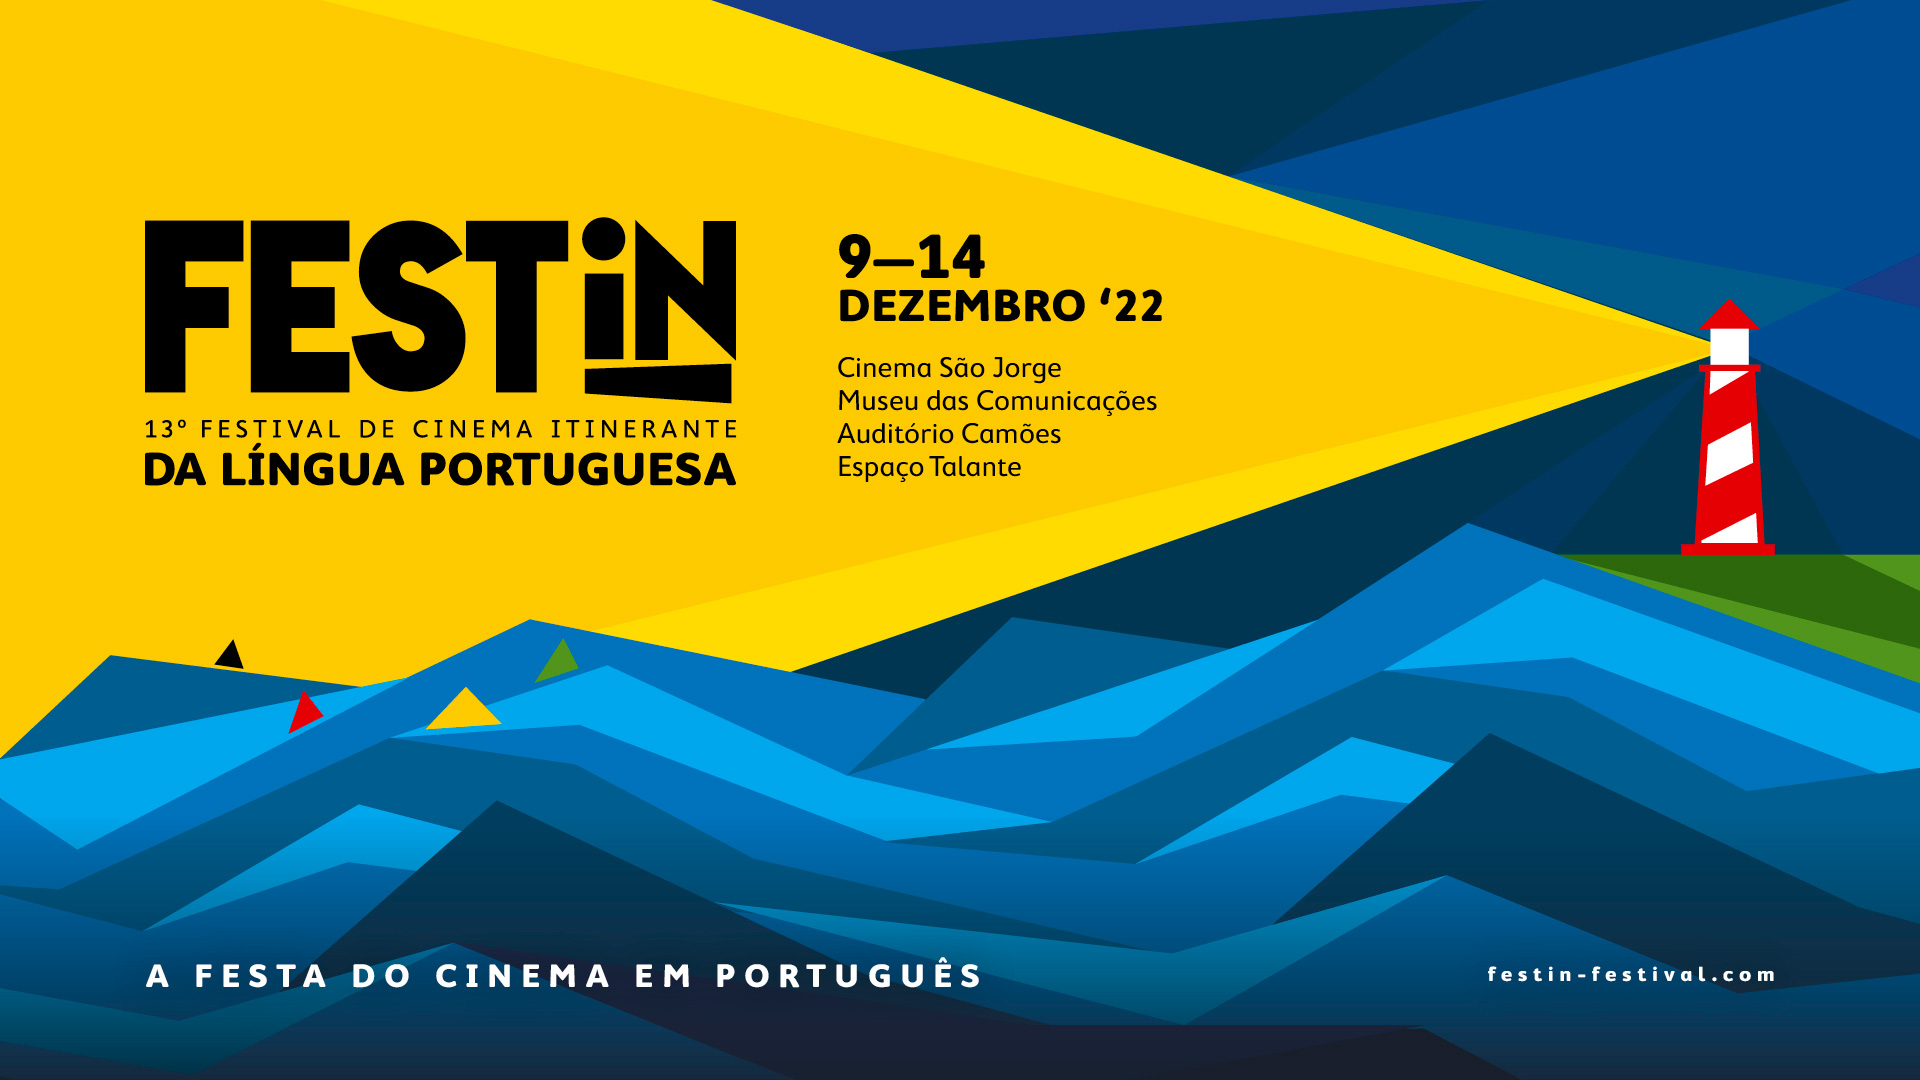 FESTin - Festival de Cinema Itinerante da Língua Portuguesa